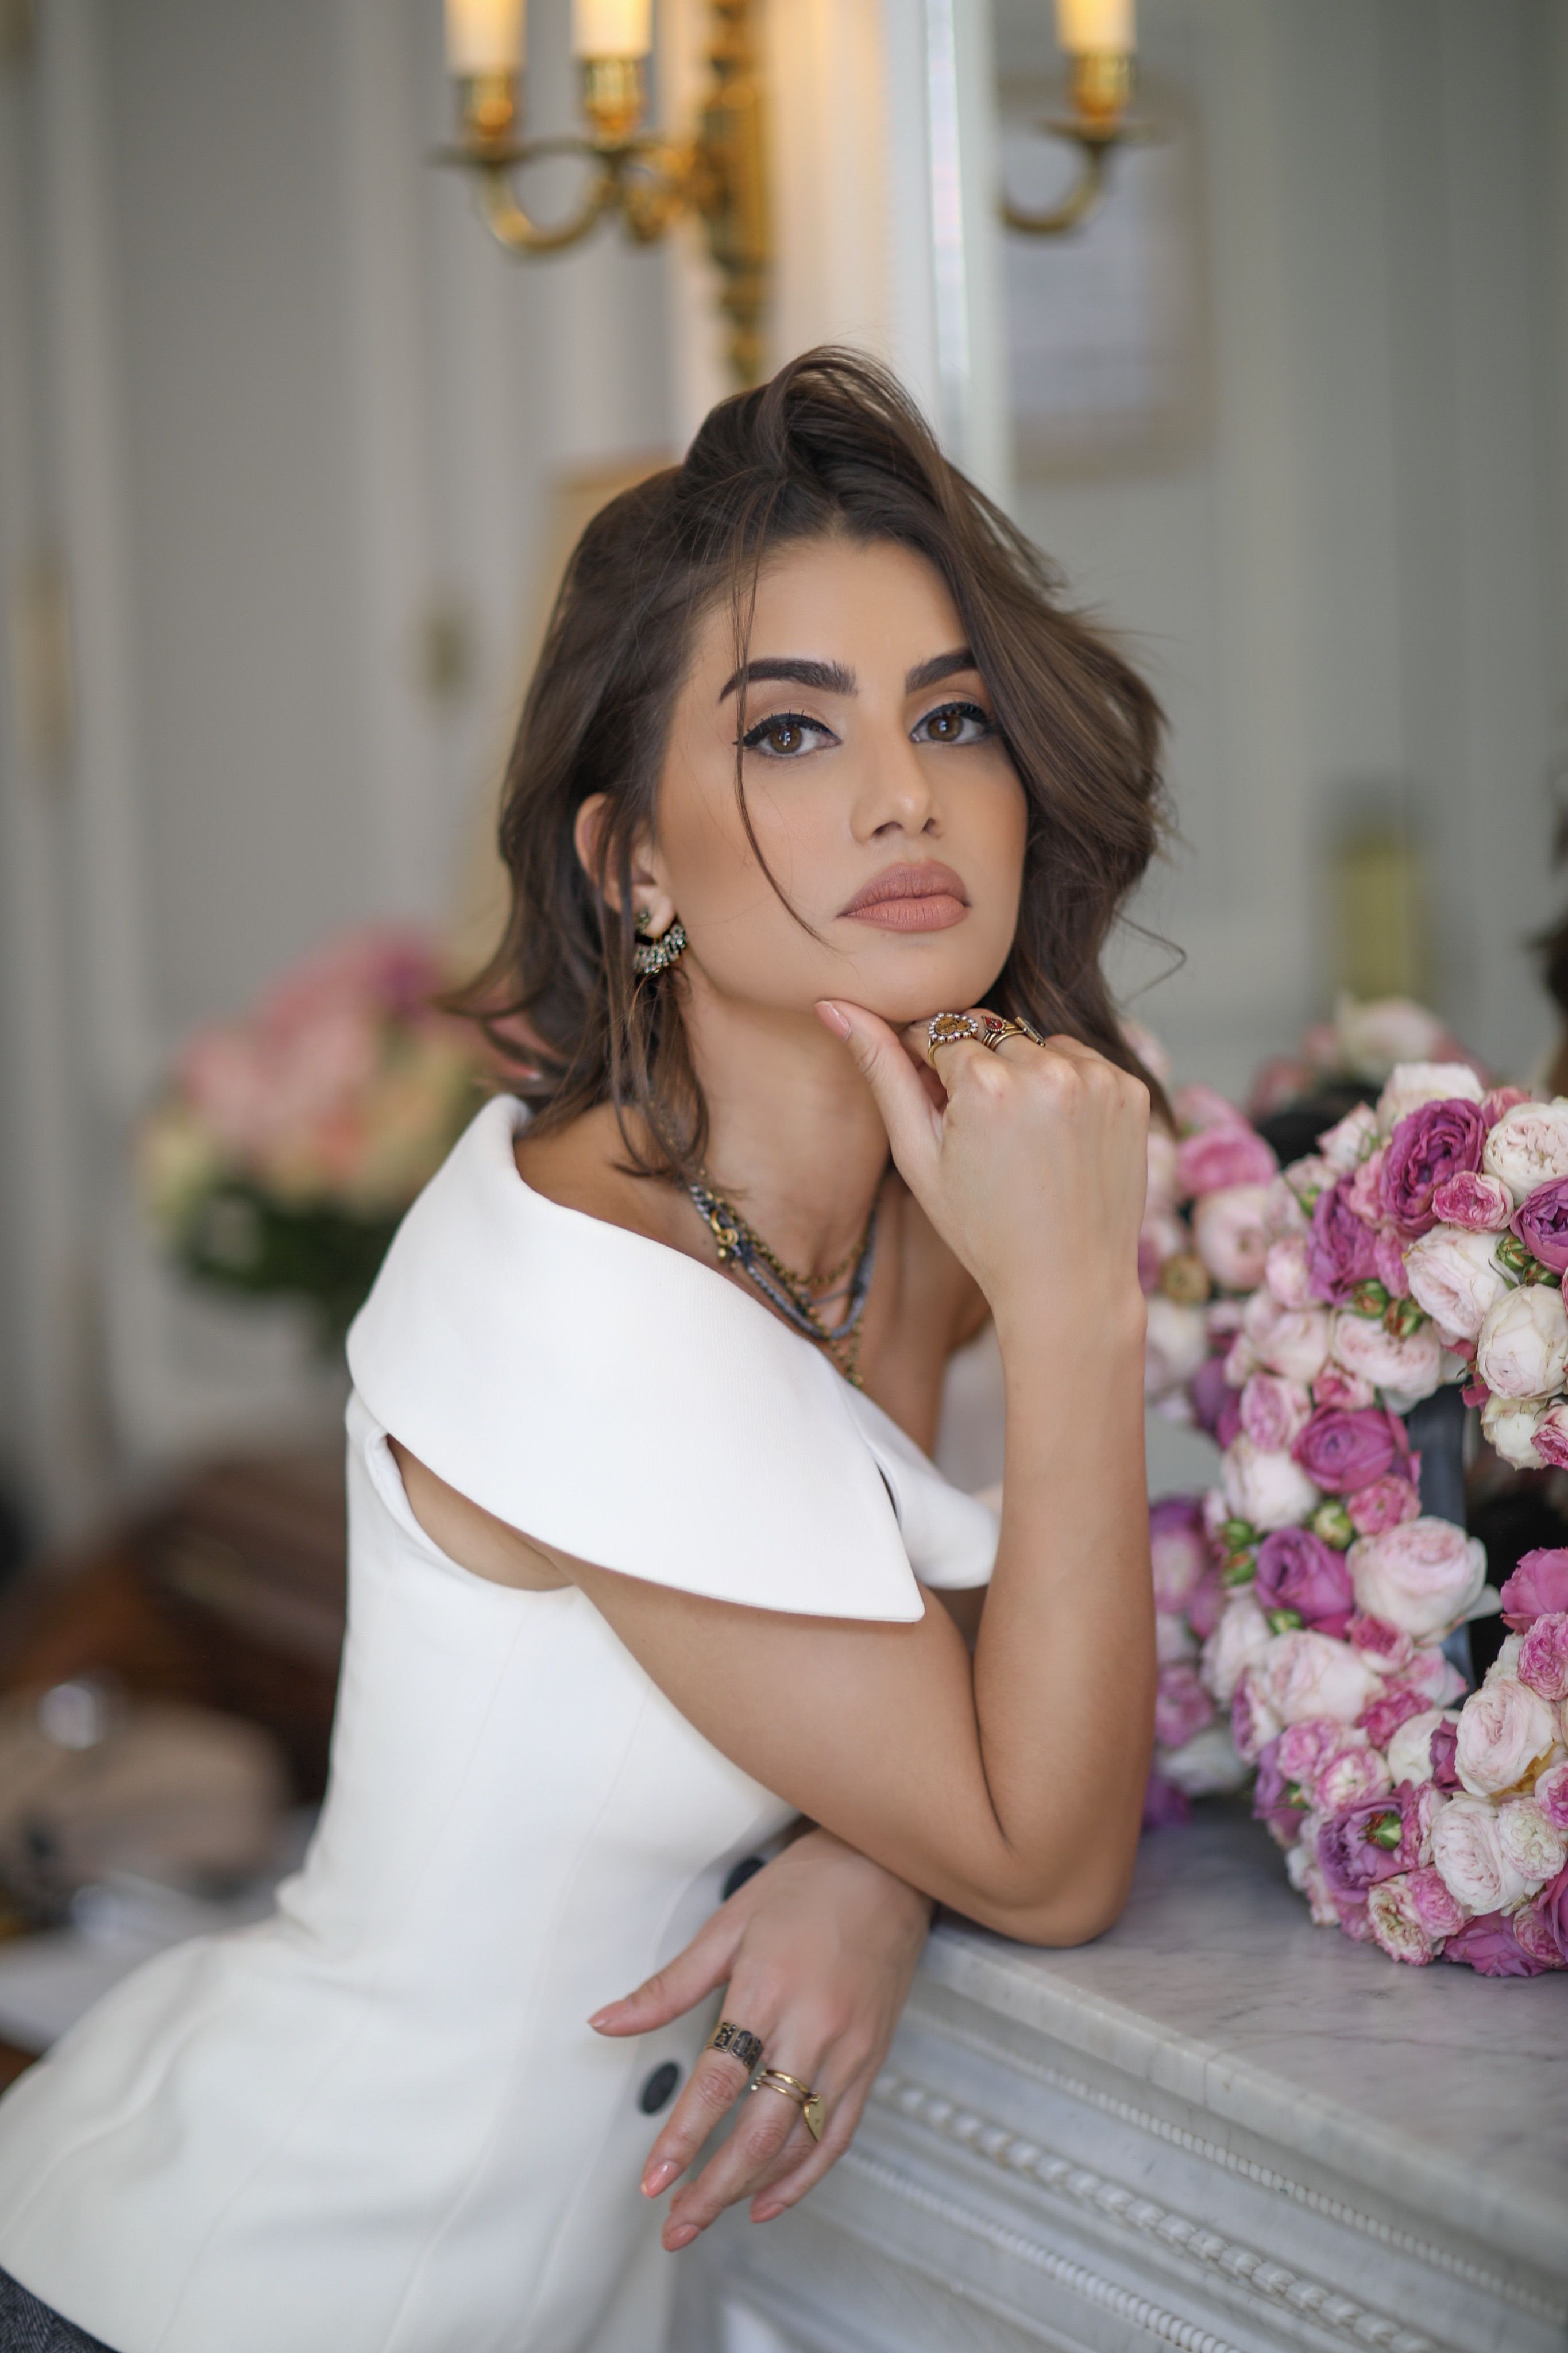 Camila Coelho's Beauty Instagram Tips